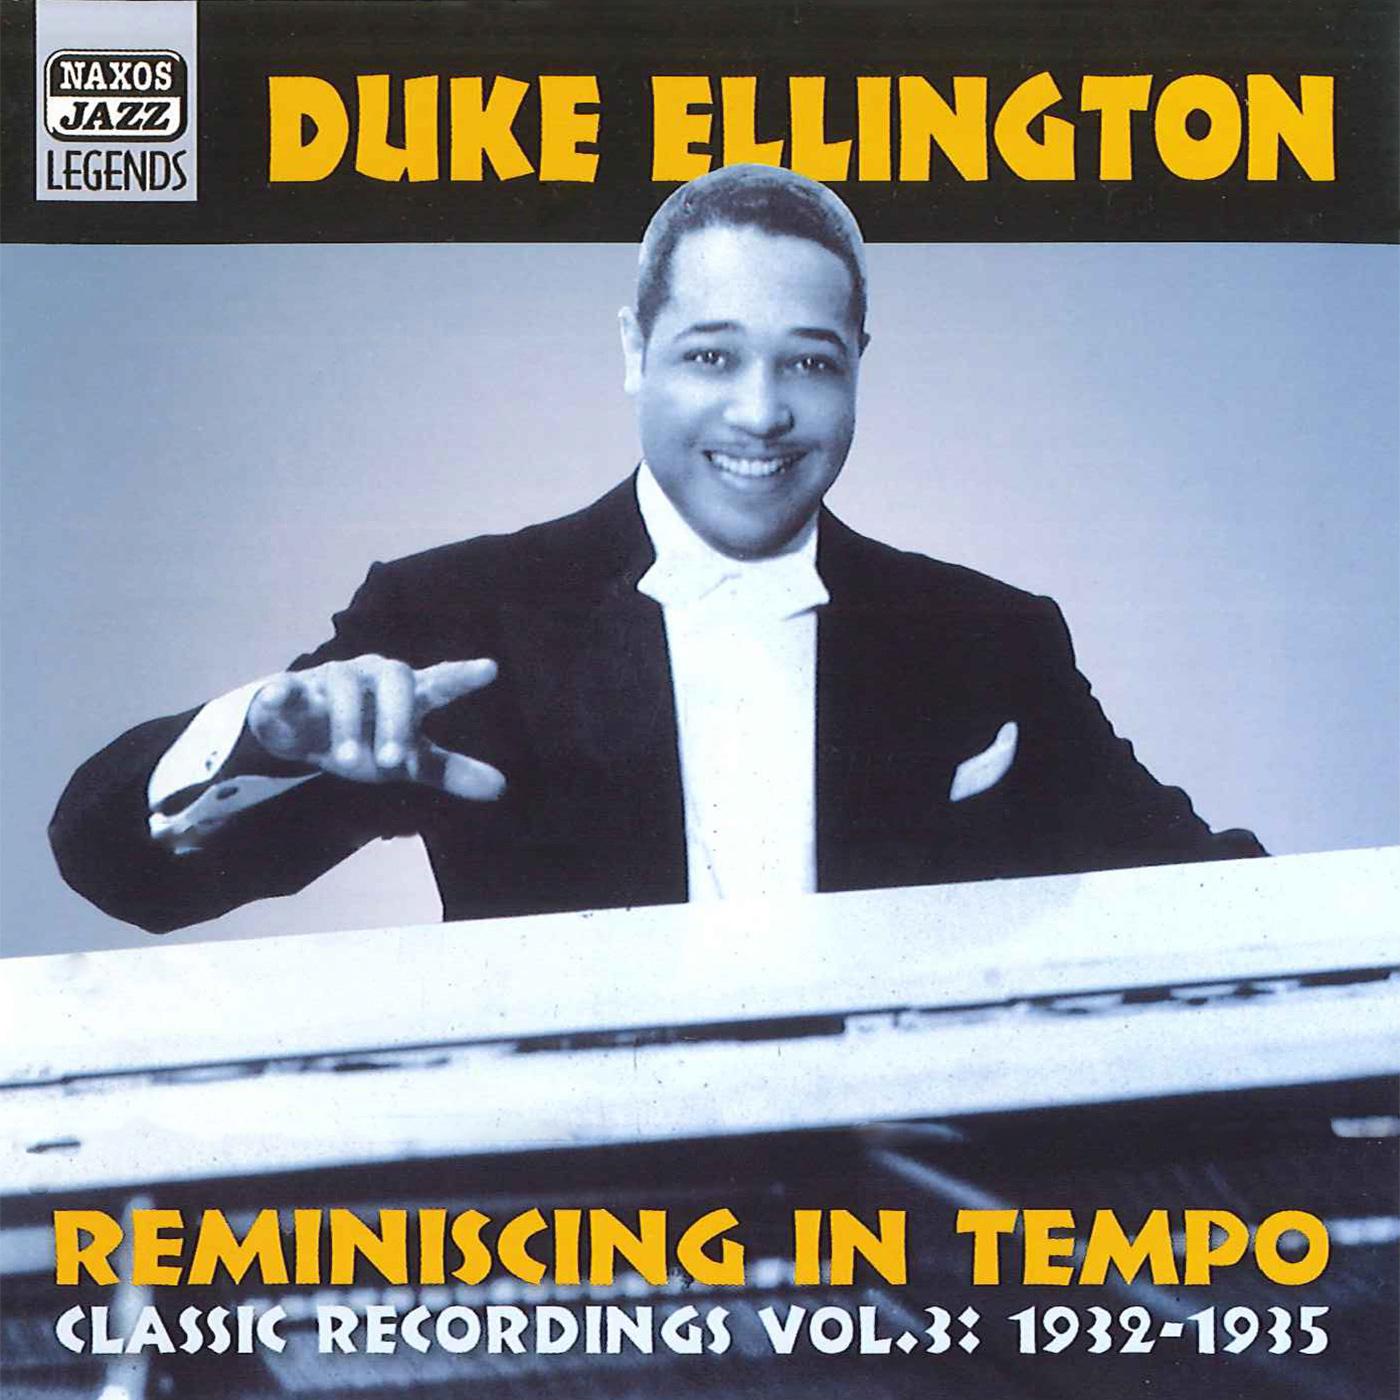 ELLINGTON, Duke: Reminiscing in Tempo (1932-1935) (Duke Ellington, Vol. 3)